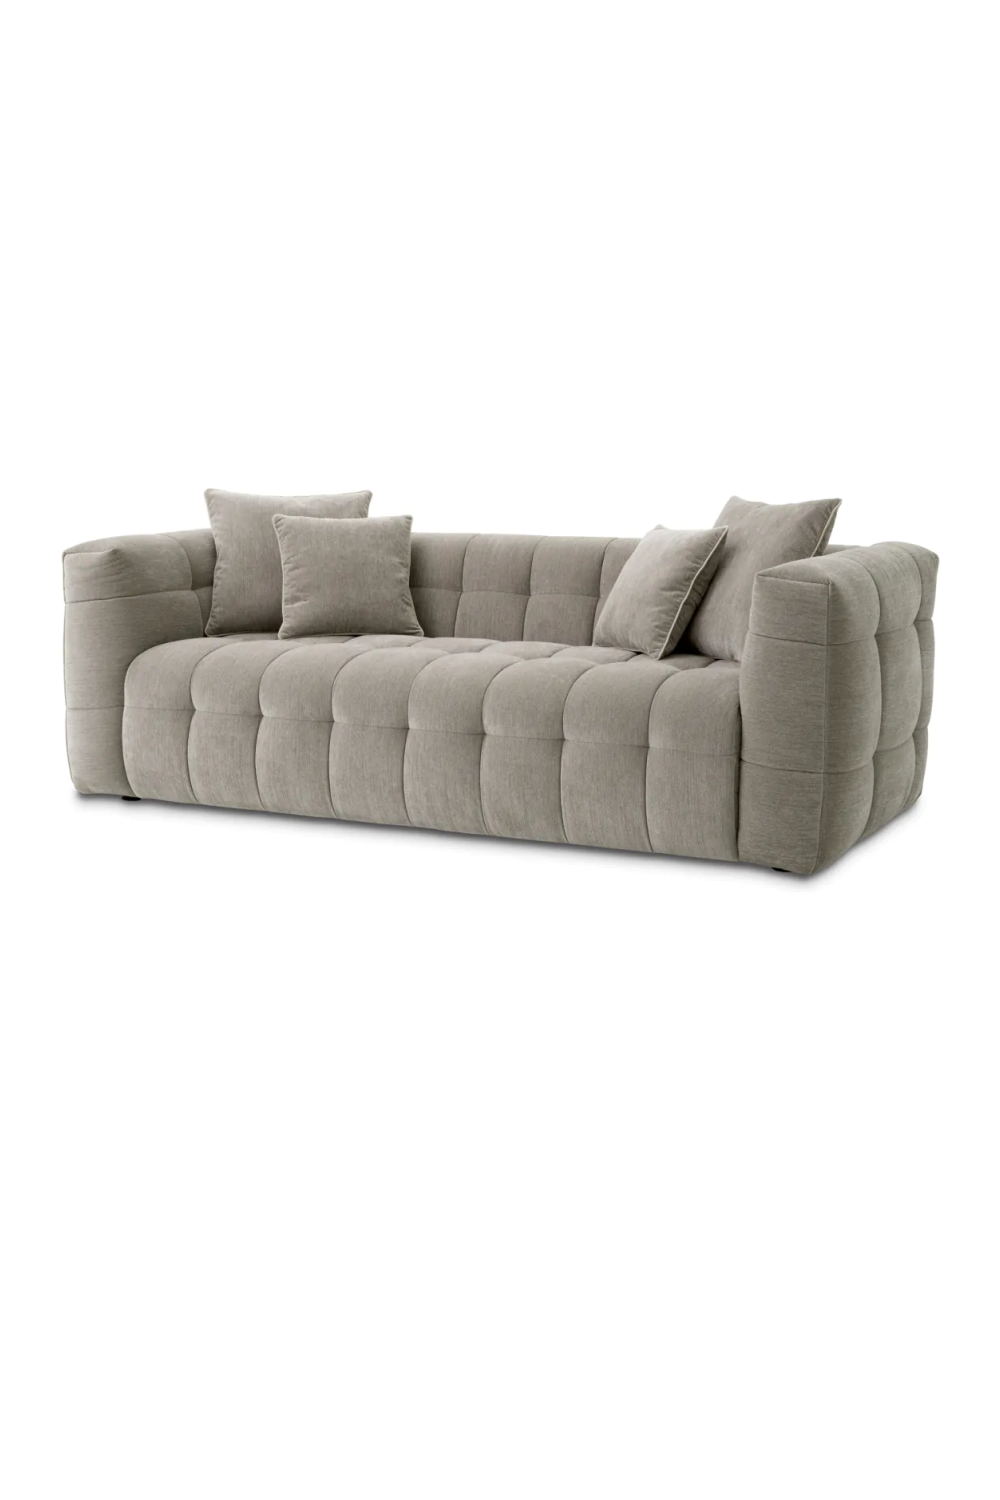 Tufted Modern Sofa | Eichholtz Breva | Oroa.com